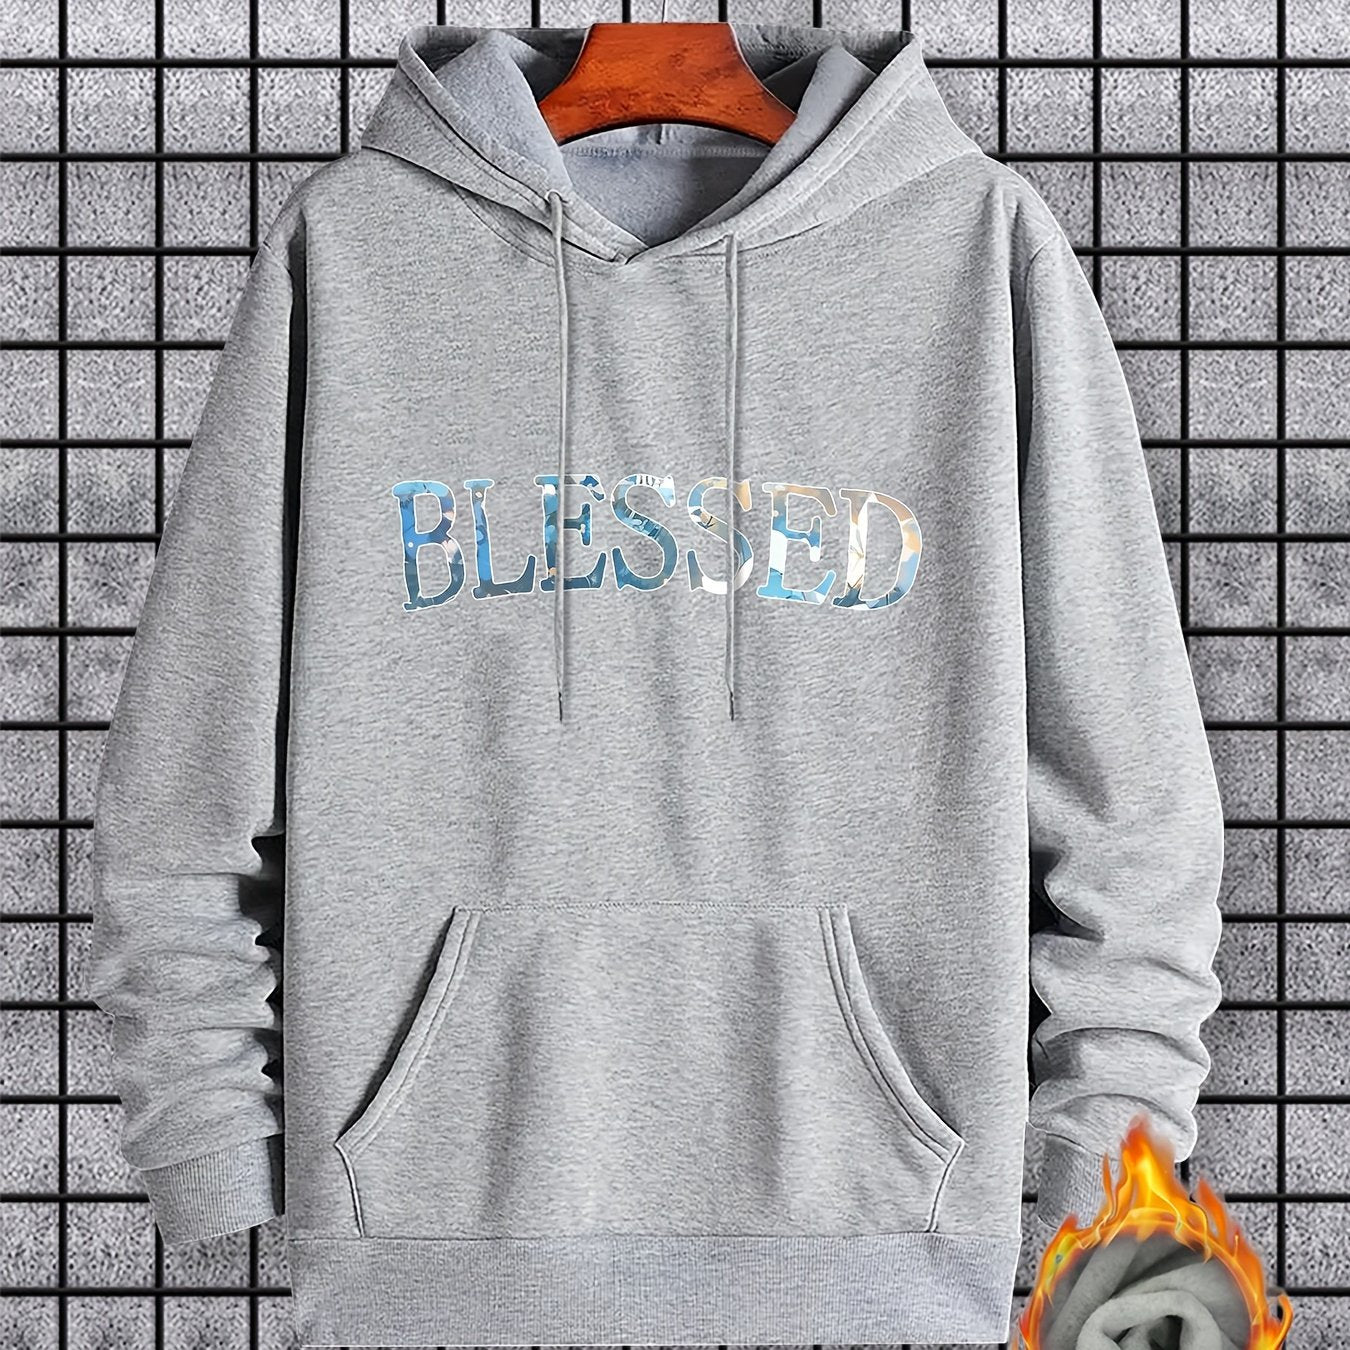 Blessed Men's Christian Pullover Hooded Sweatshirt claimedbygoddesigns